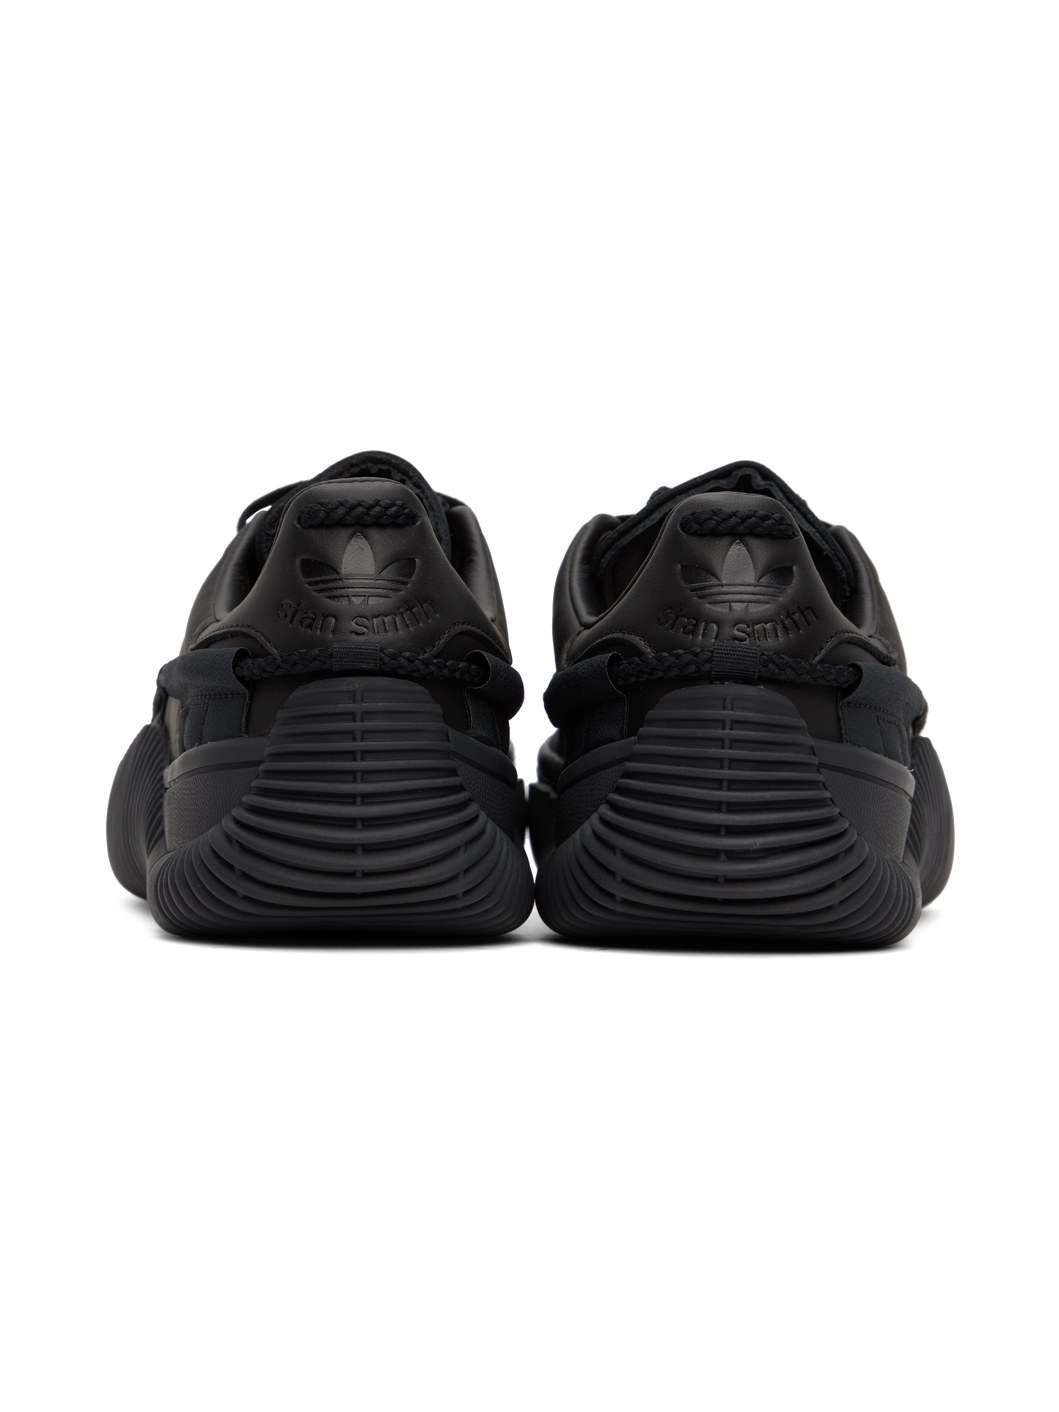 Black adidas Originals Edition Scuba Stan Smith Sneakers - 2